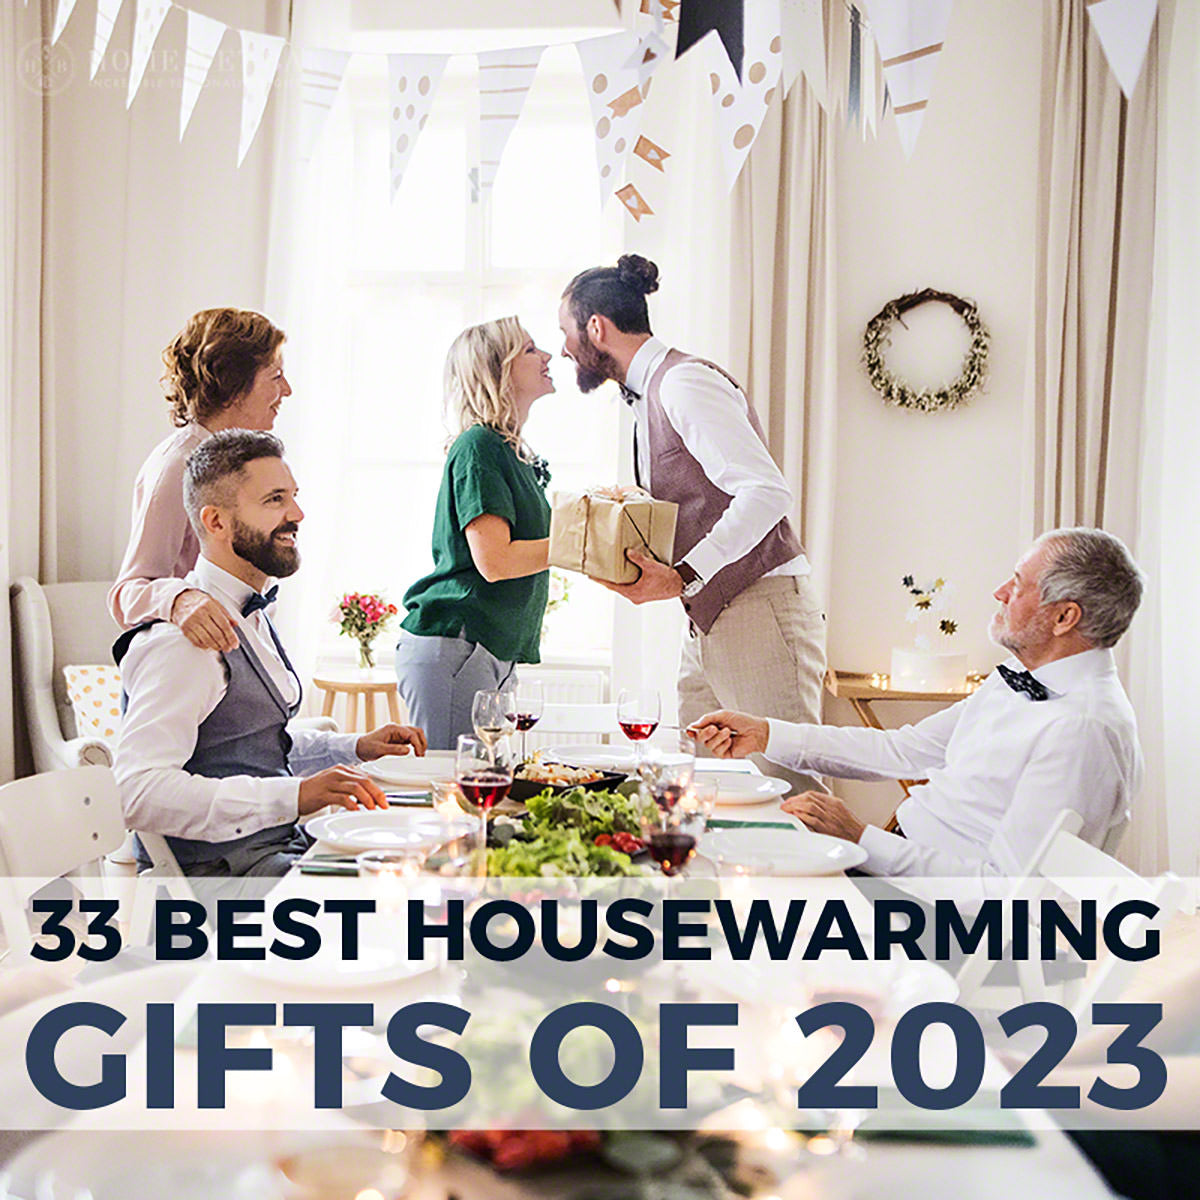 https://www.homewetbar.com/blog/wp-content/uploads/2020/08/33-Best-Housewarming-Gifts-Of-2023.jpg